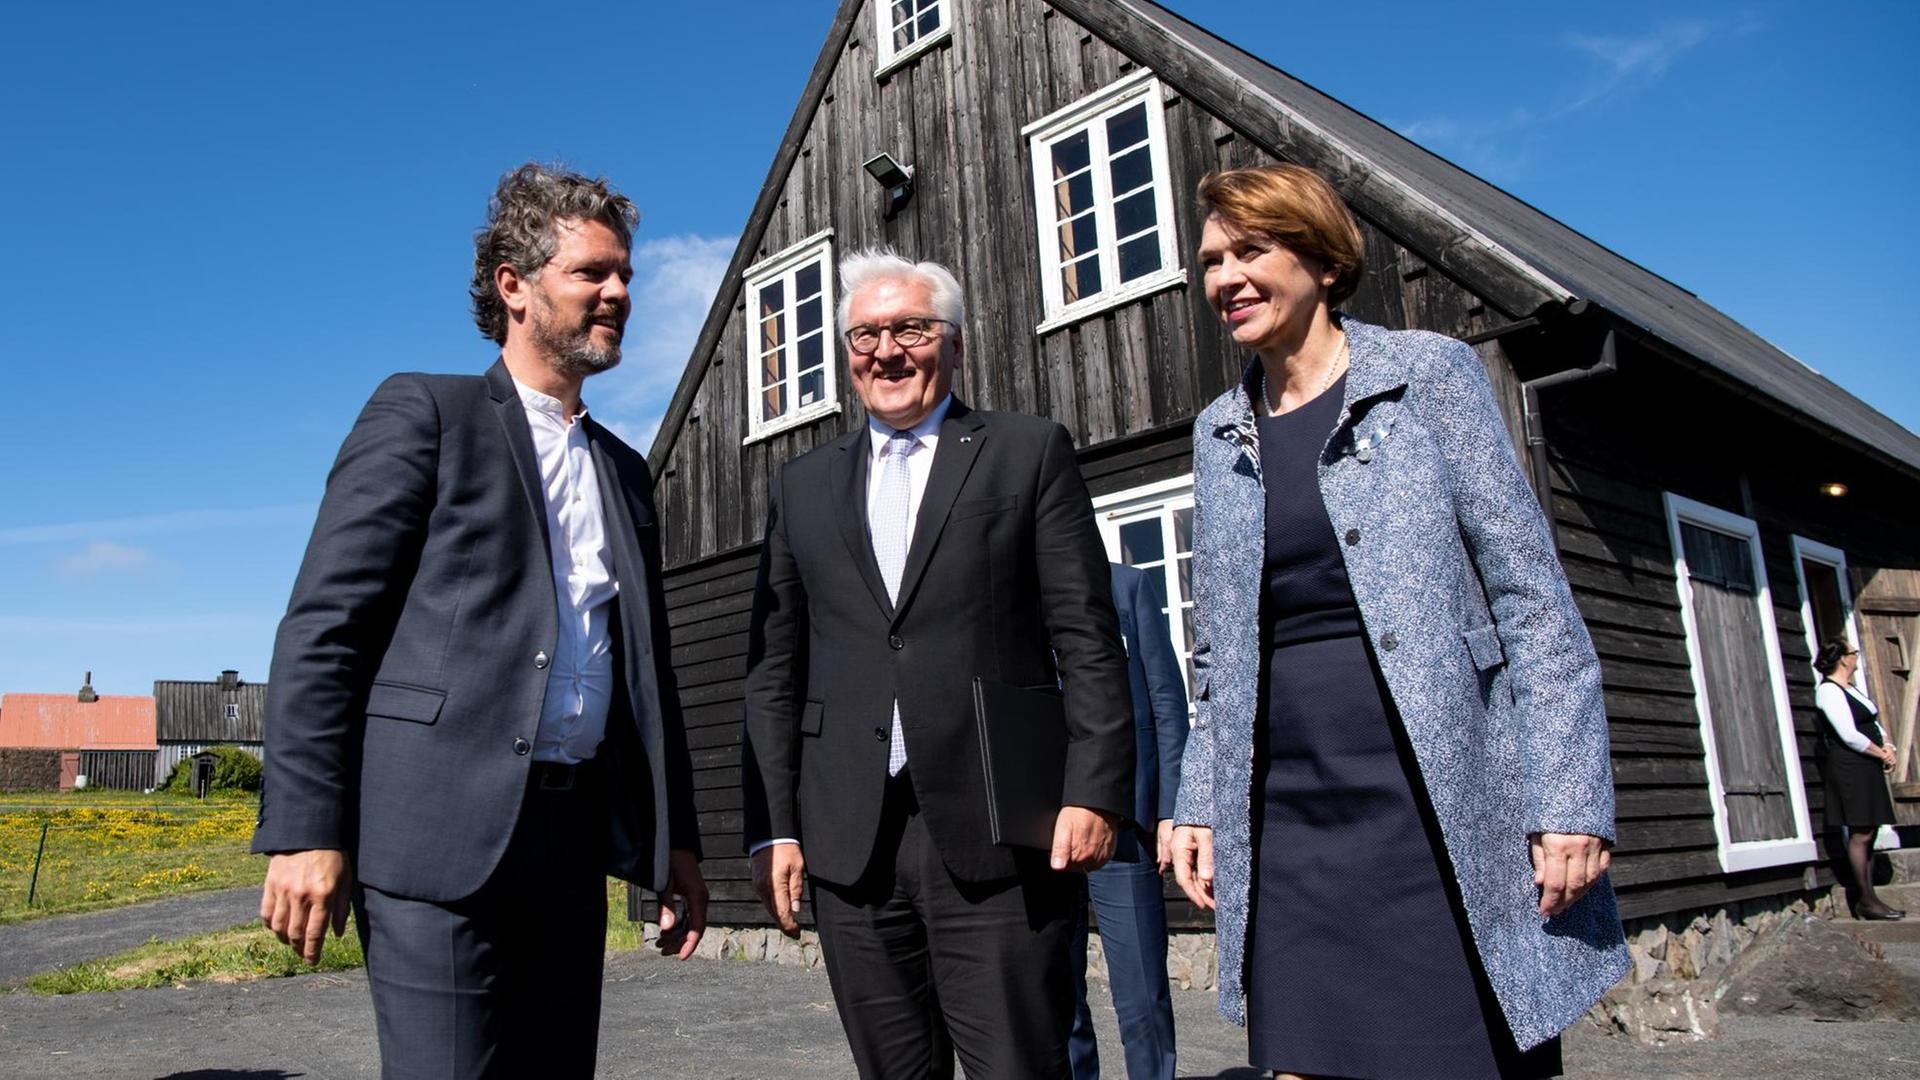 Island, Reykjavik: Bundespräsident Frank-Walter Steinmeier und seine Frau Elke Büdenbender besuchen das Freilichtmuseum Árbæjarsafn und werden dort vom Bürgermeister Reykjaviks, Dagur B. Eggertsson (l), begrüßt.